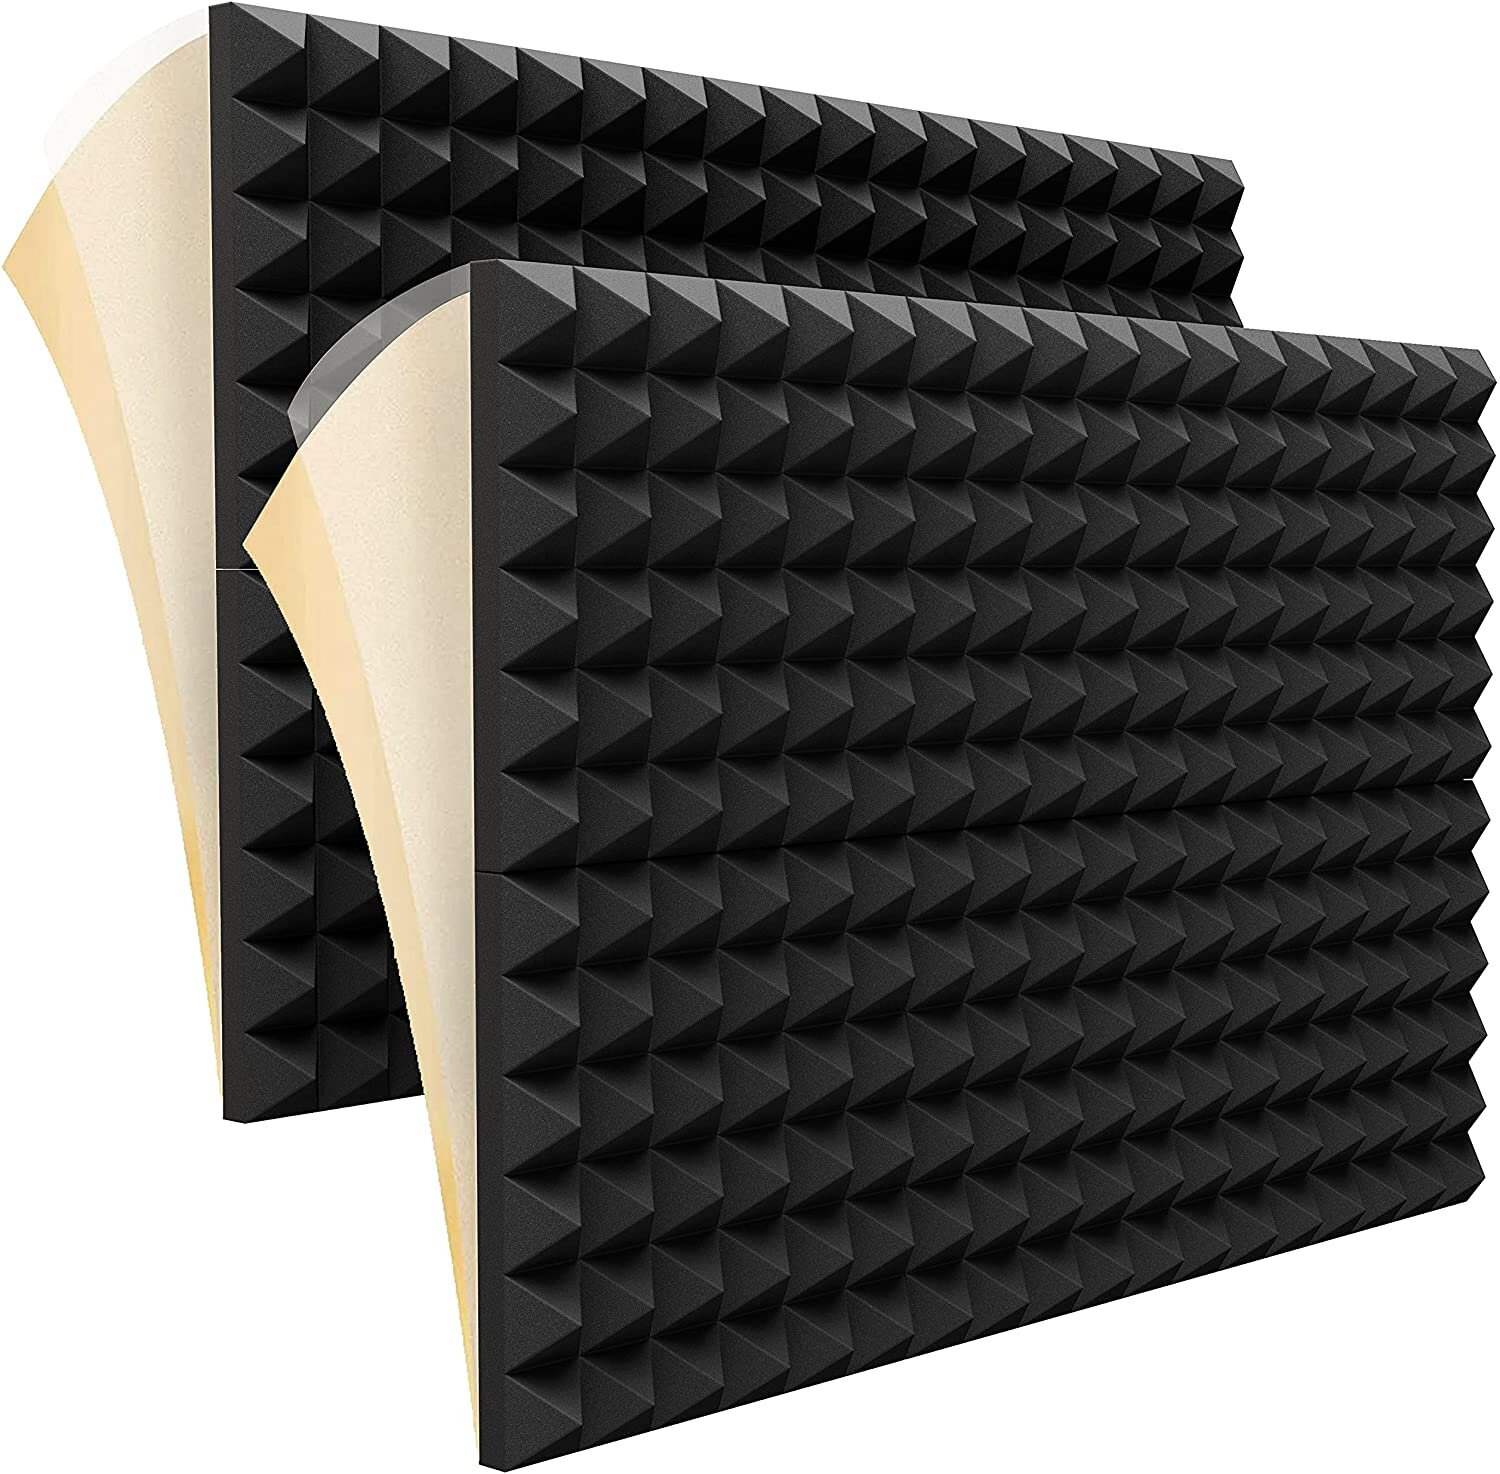 yuzhuoyongchi 12 Pack Self Adhesive Sound Proof Wall Panels, 2